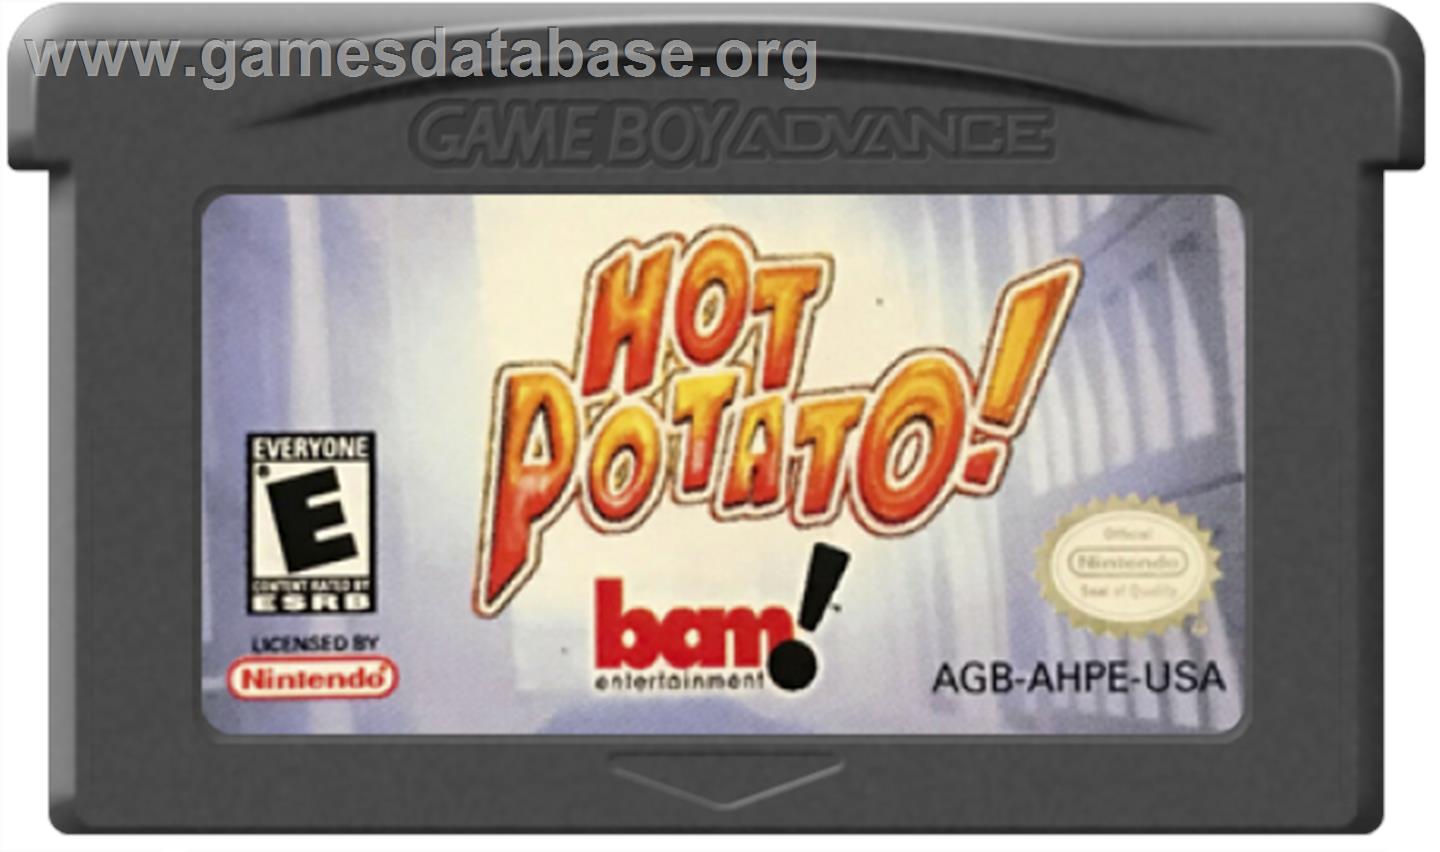 Hot Potato - Nintendo Game Boy Advance - Artwork - Cartridge